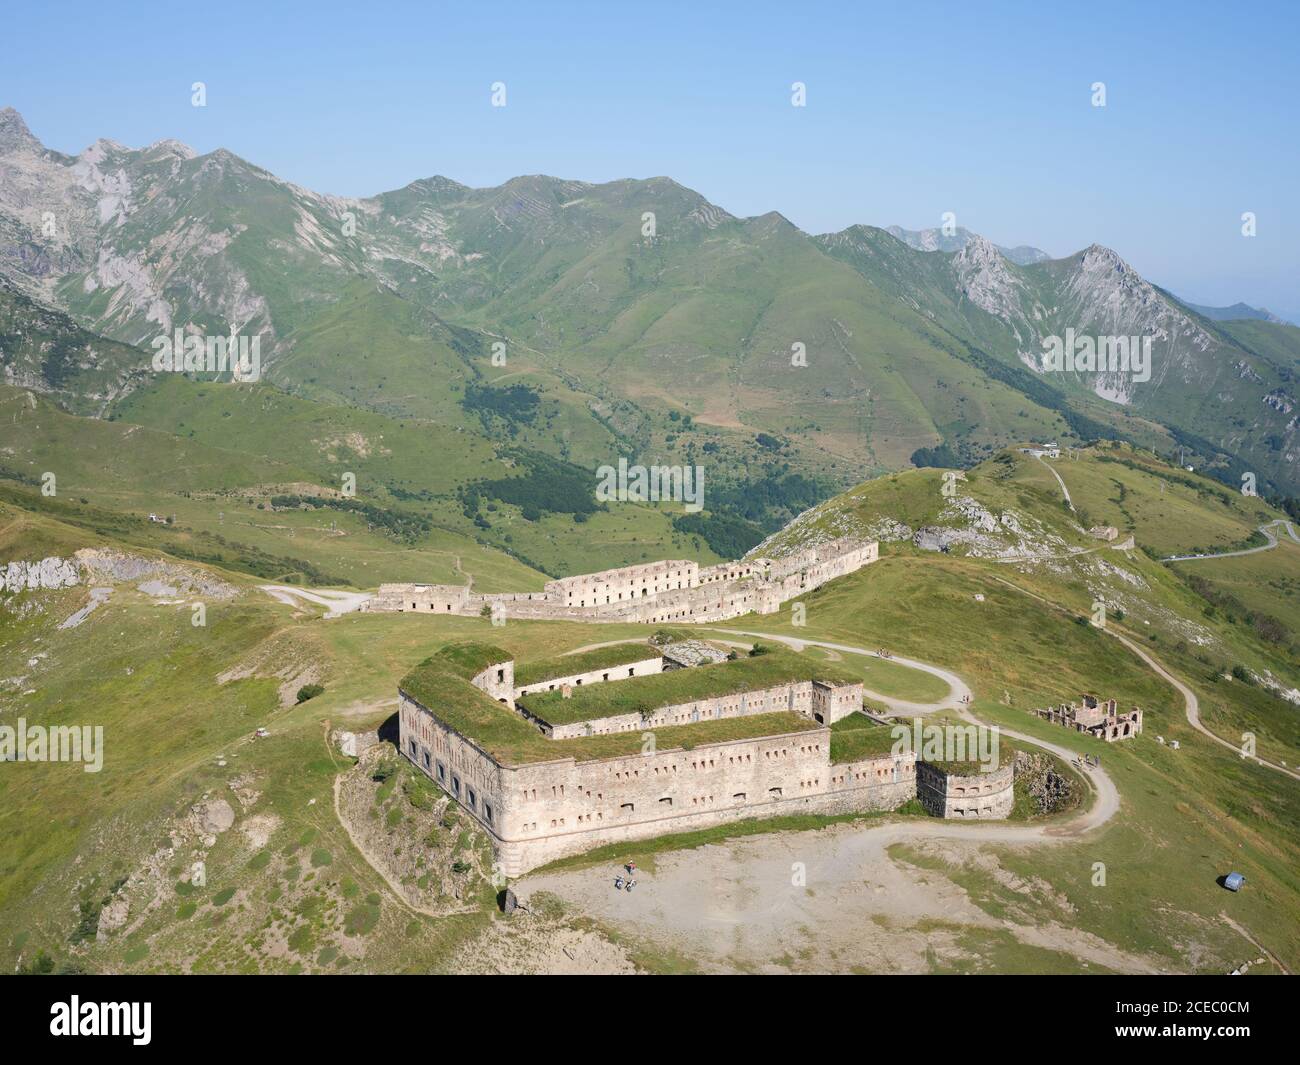 LUFTAUFNAHME. Fort Central, eine alte militärische Festung am Col de Tende. Tende, Alpes-Maritimes, Frankreich. Stockfoto